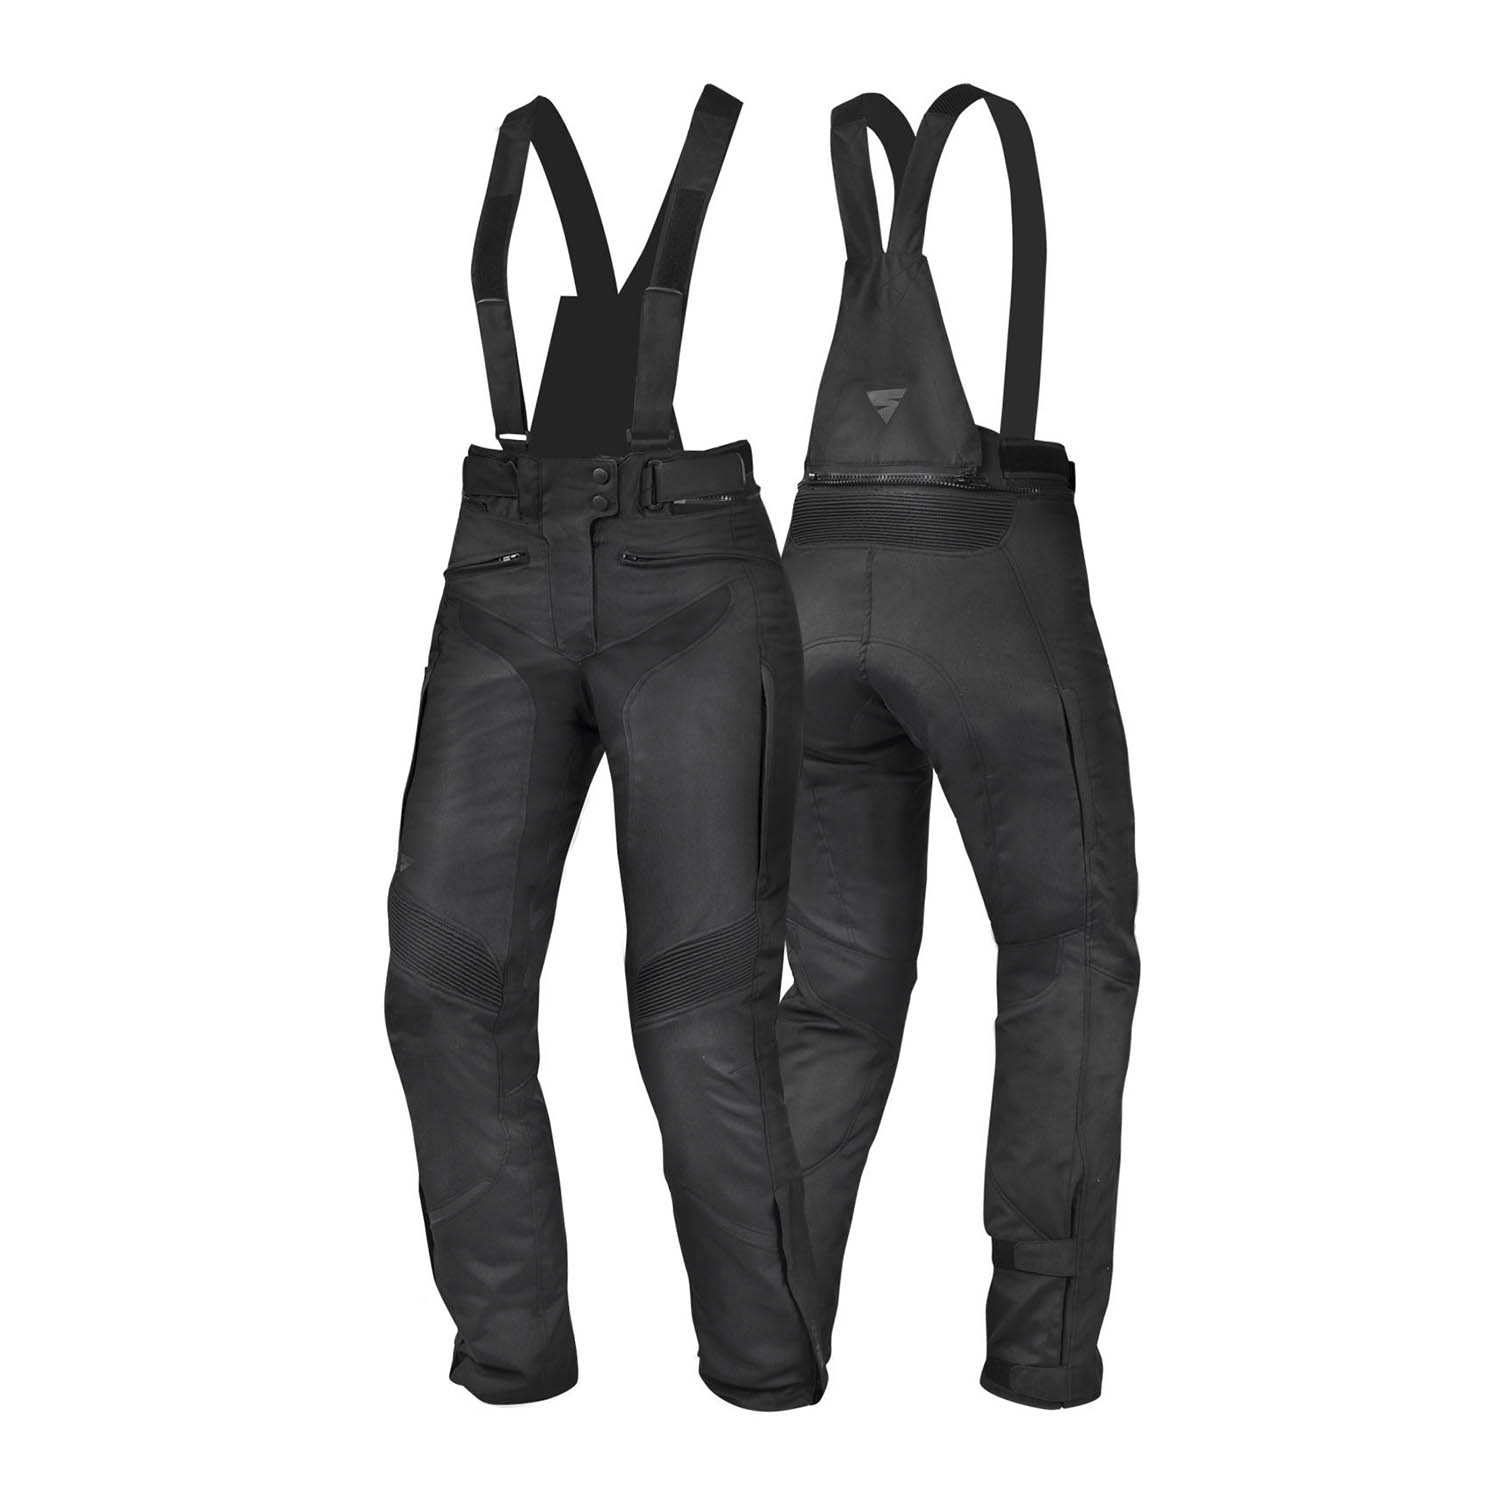 Мотоциклетные женские штаны SHIMA NOMADE из текстиля купить по низкой цене